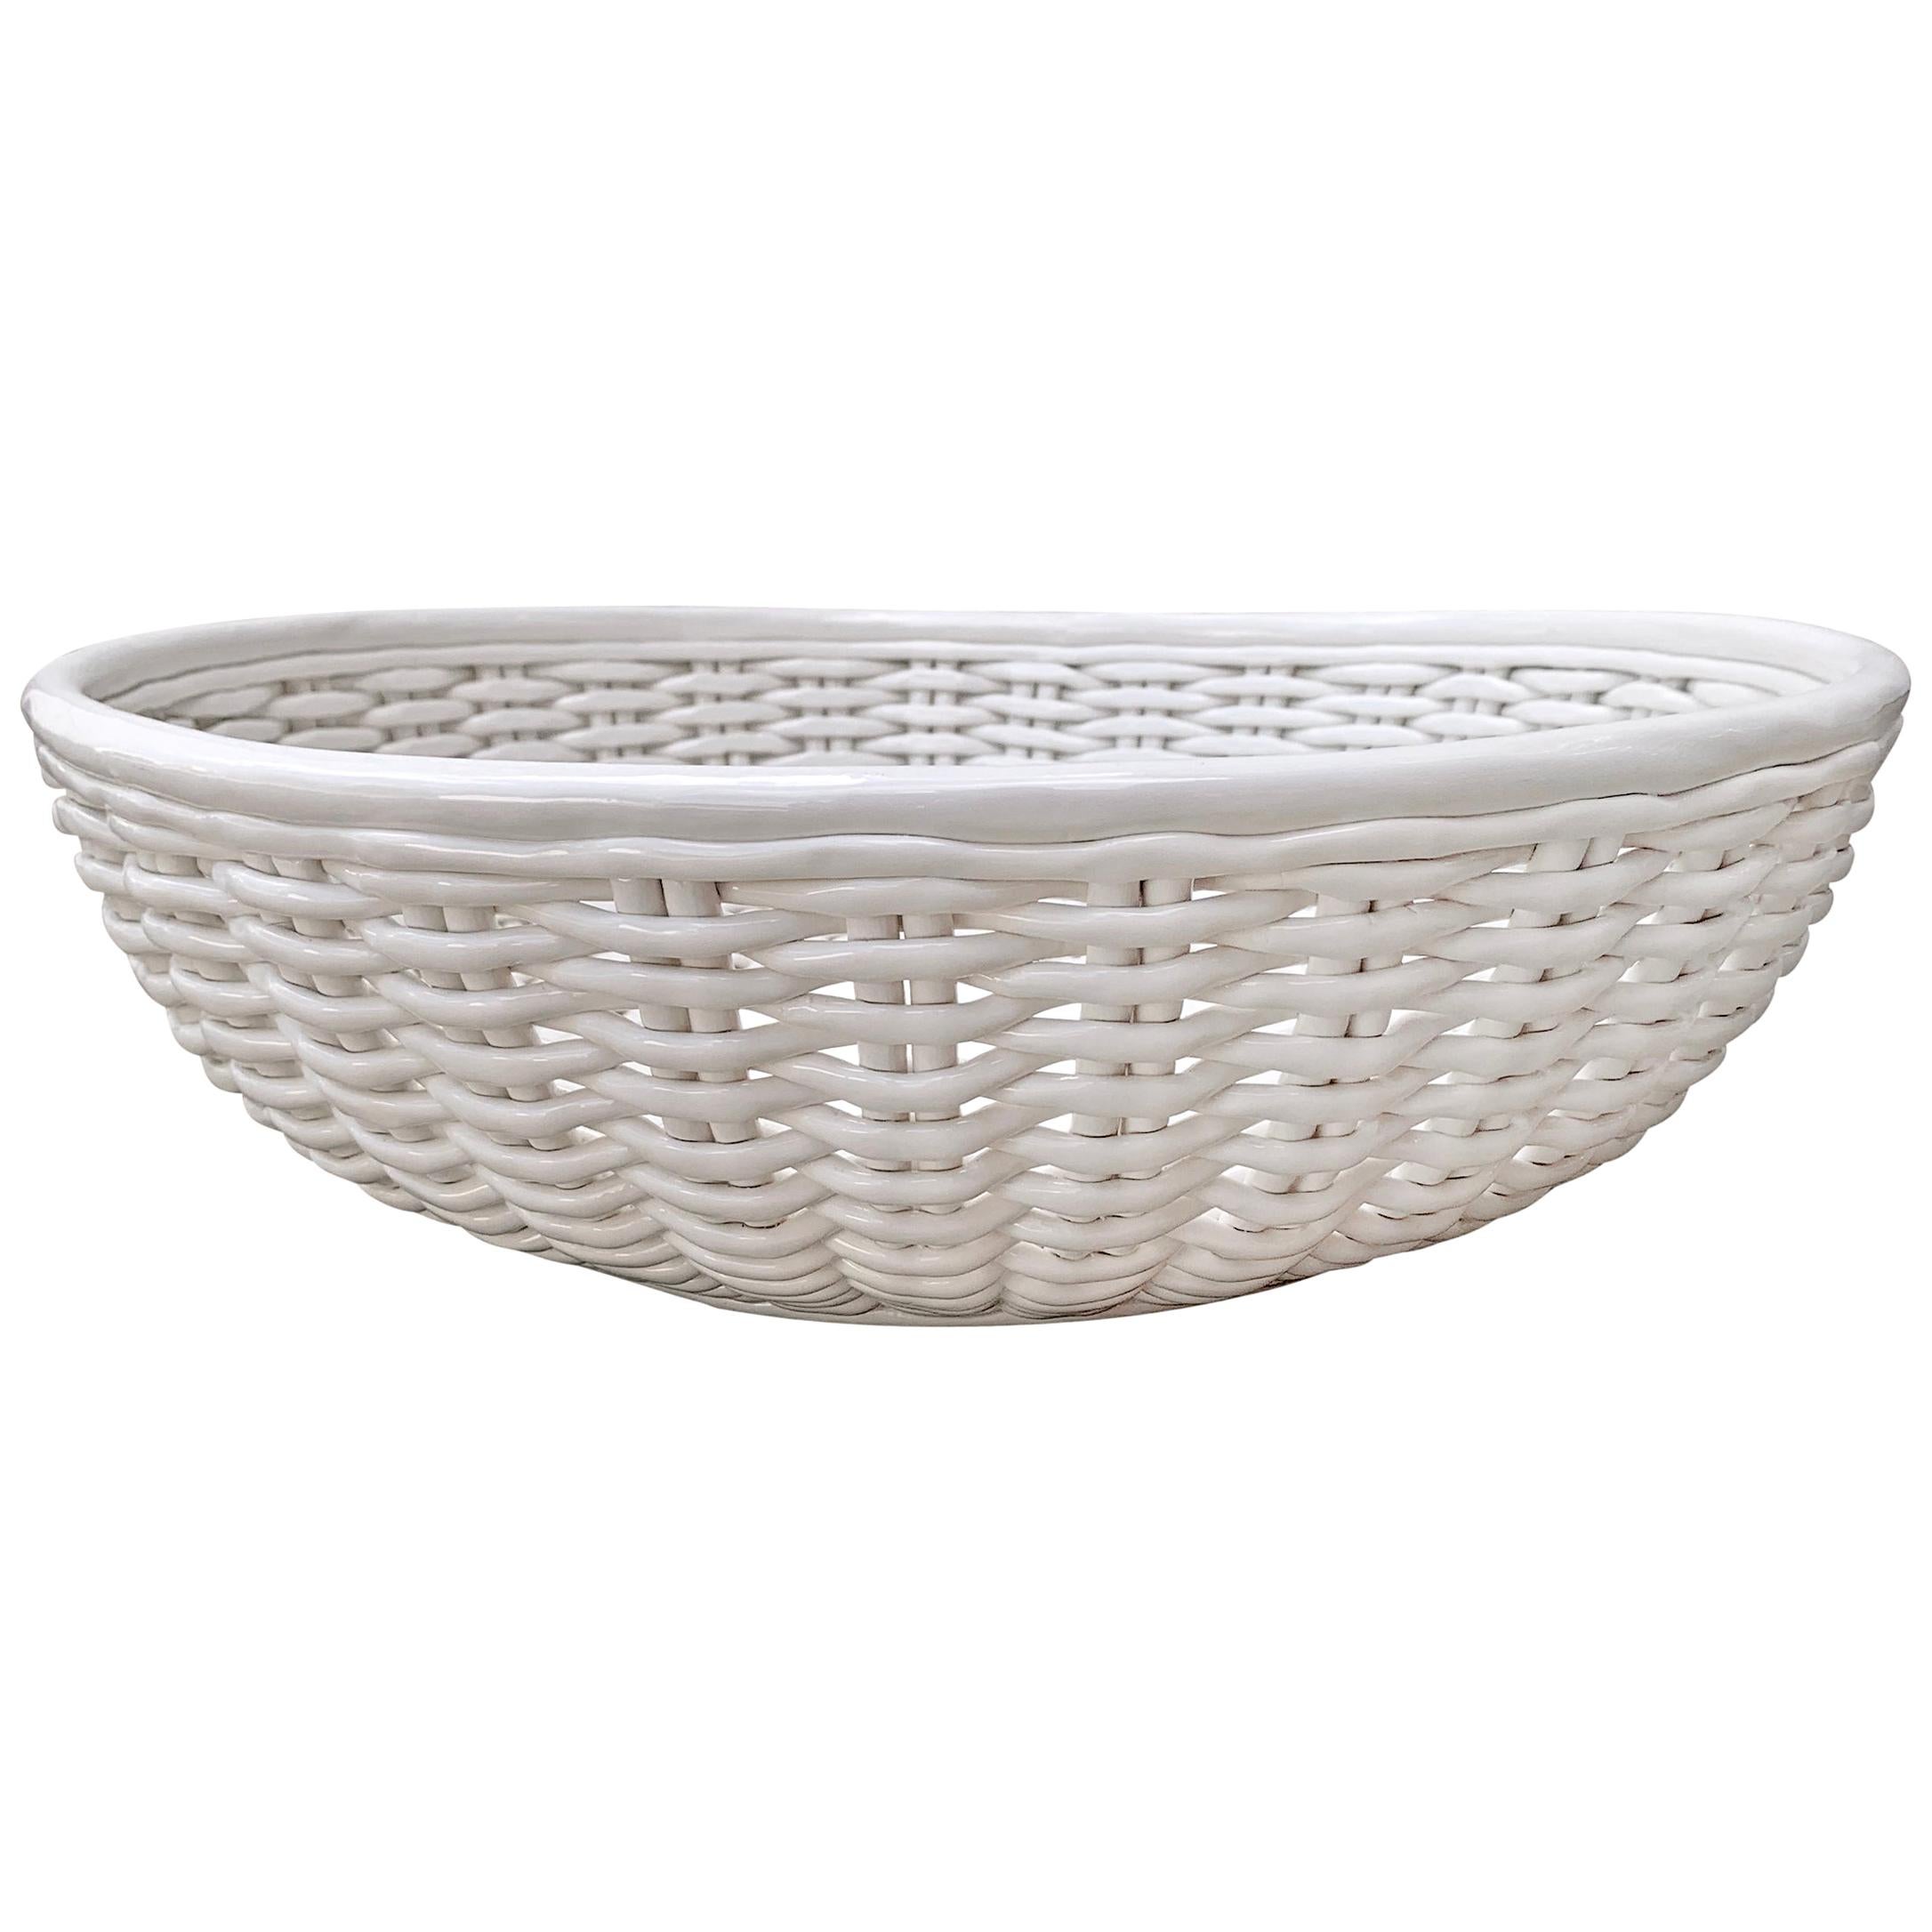 Grande Italian Woven Porcelain Bowl